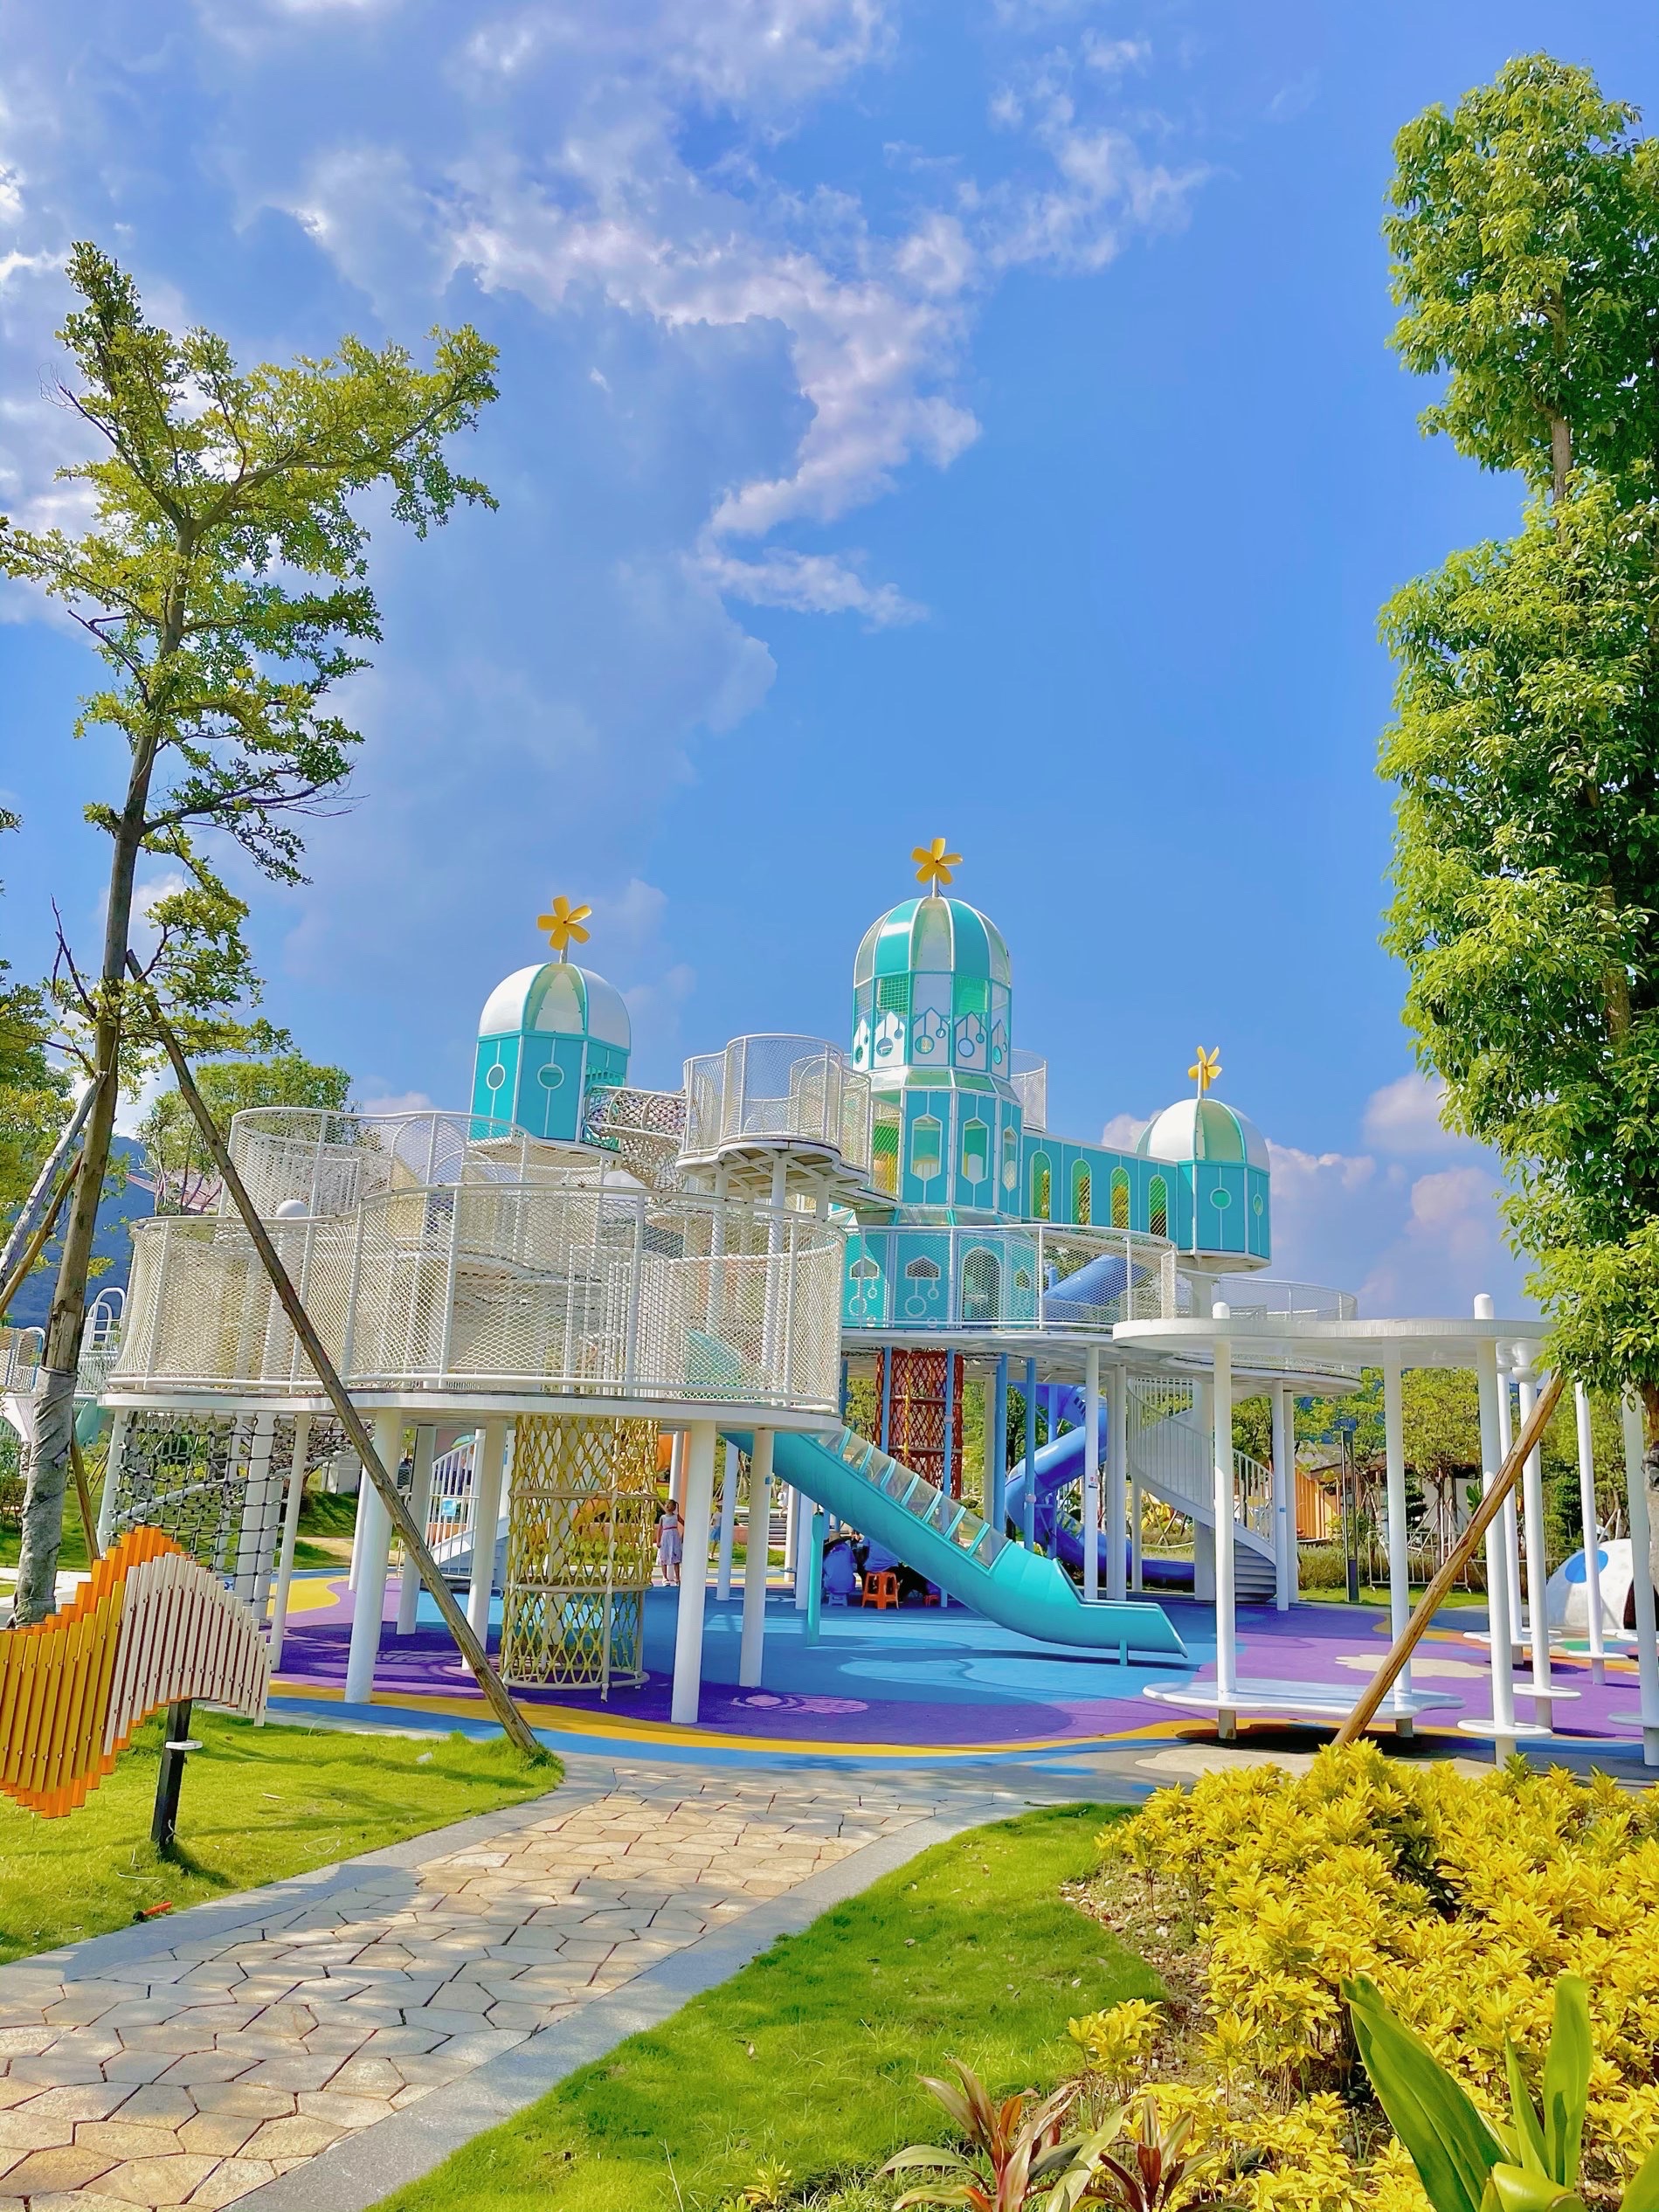 广州白云区儿童公园图片